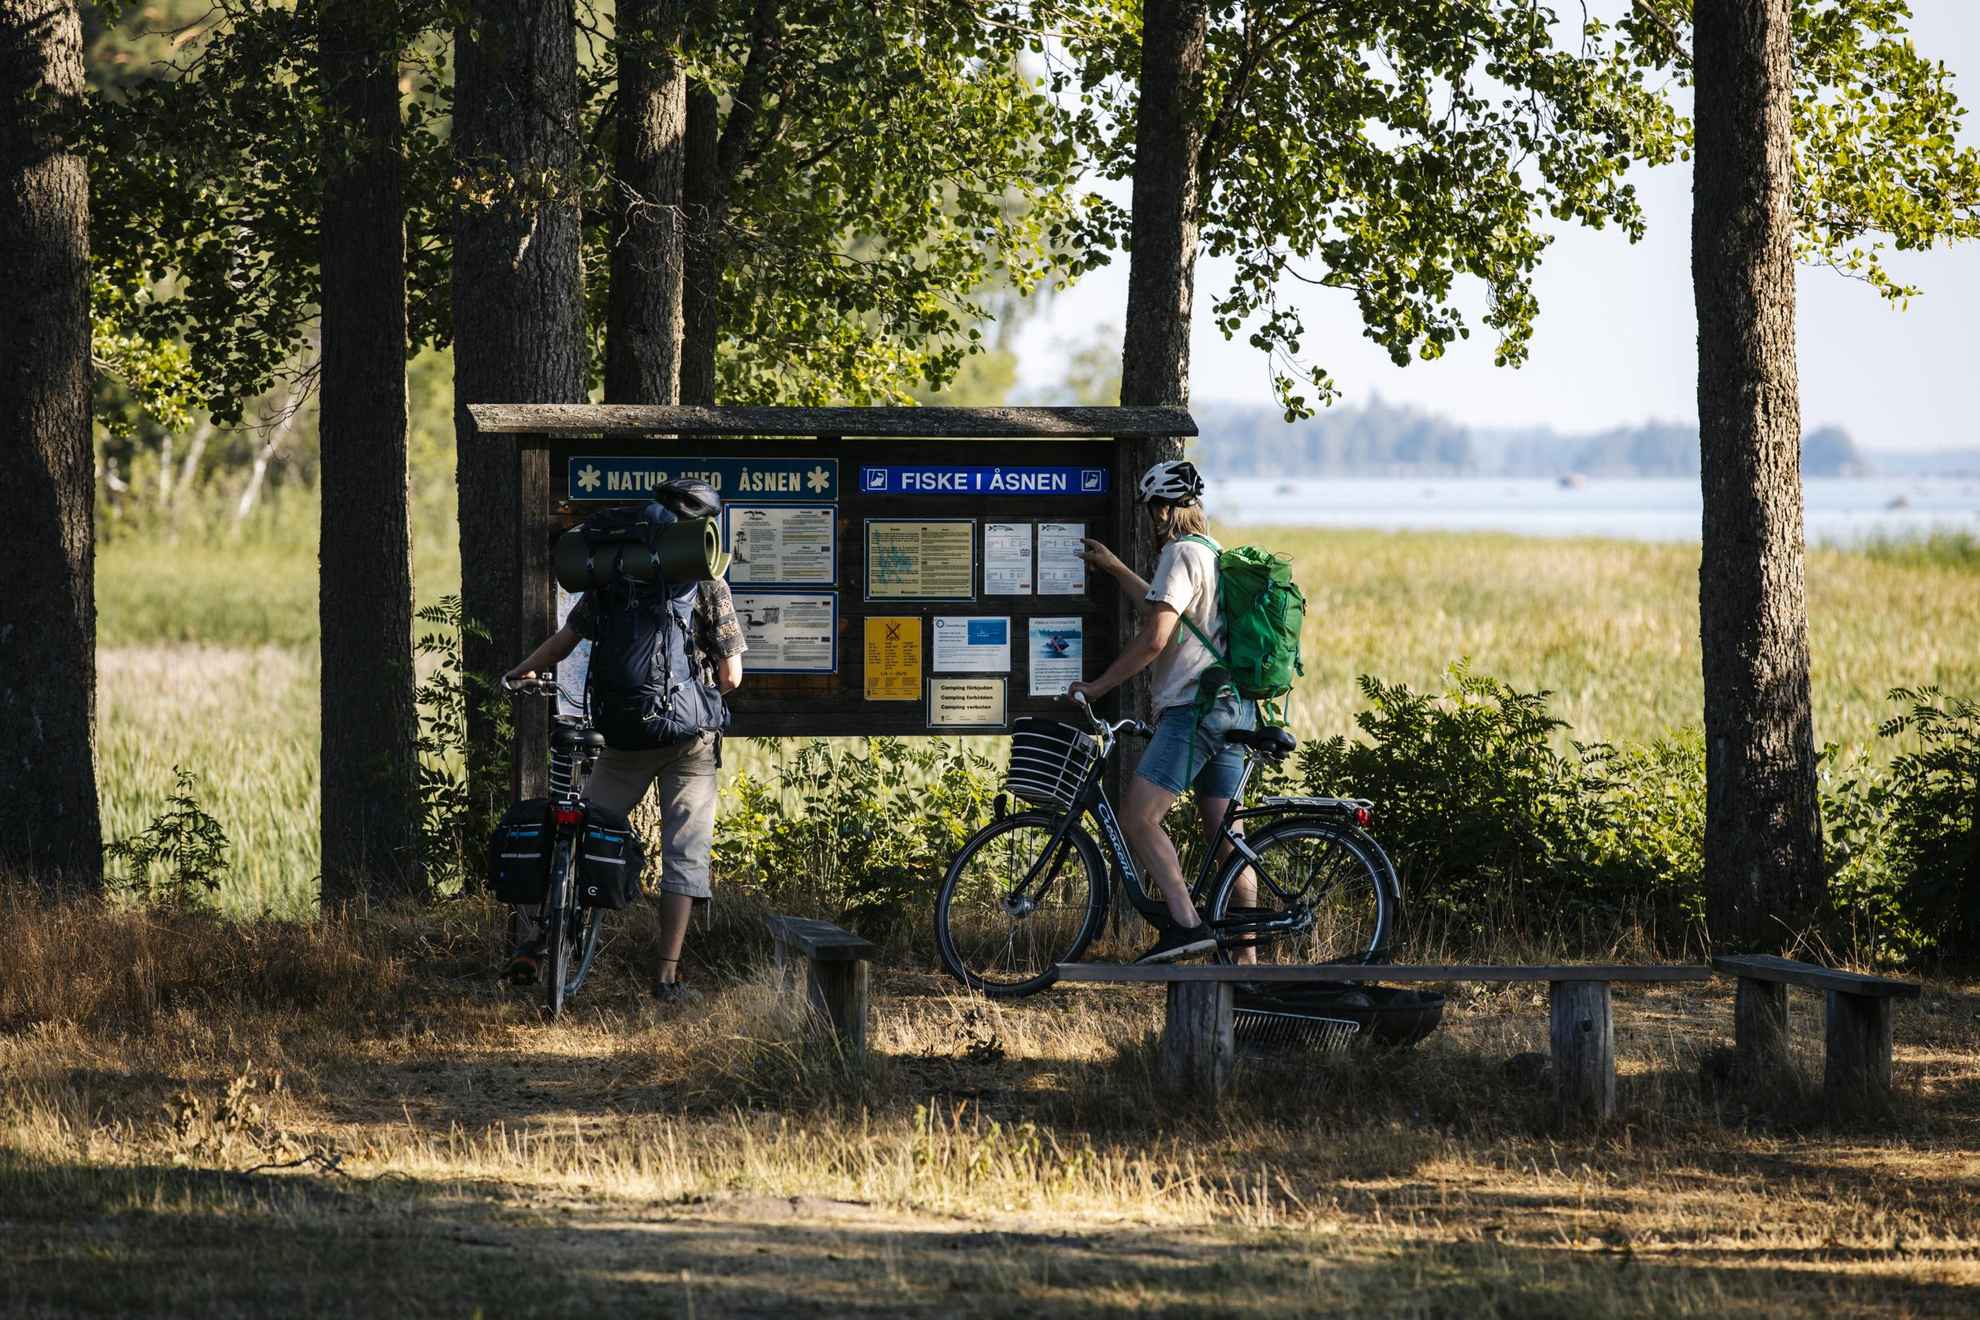 Fahrrad fahren am See Åsnen, Småland